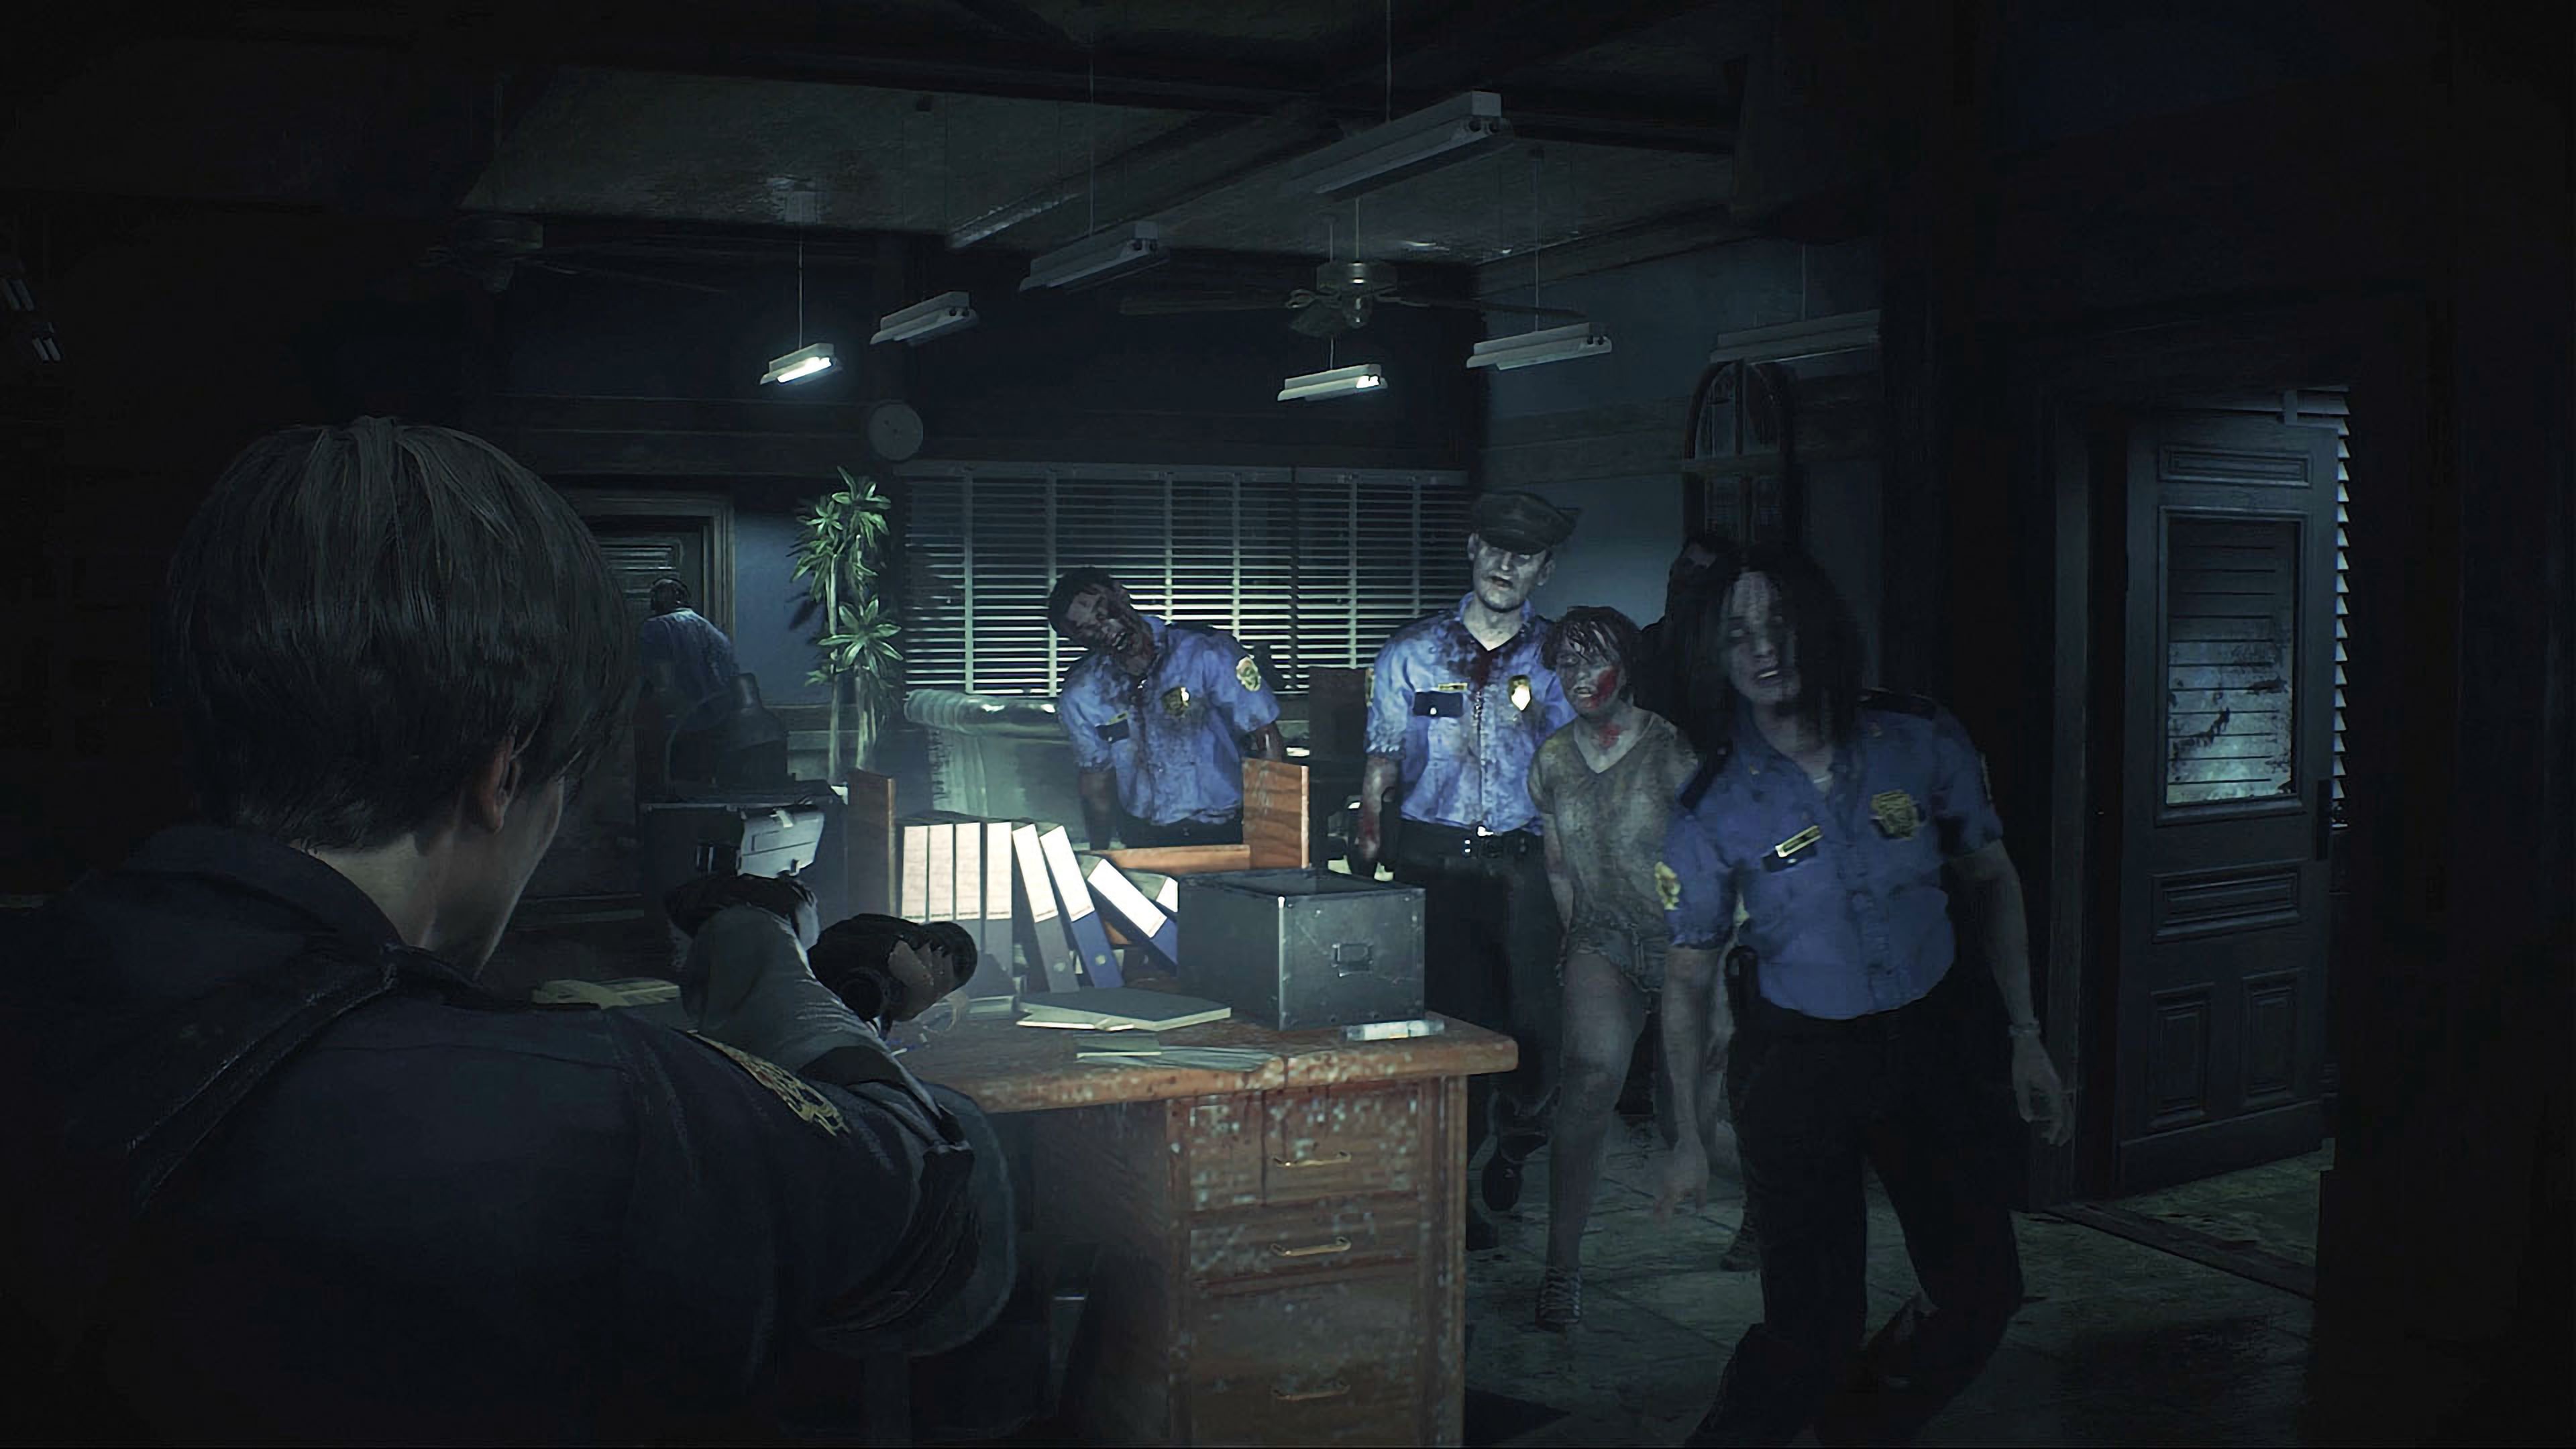 Resident Evil 2 - PS4 Games